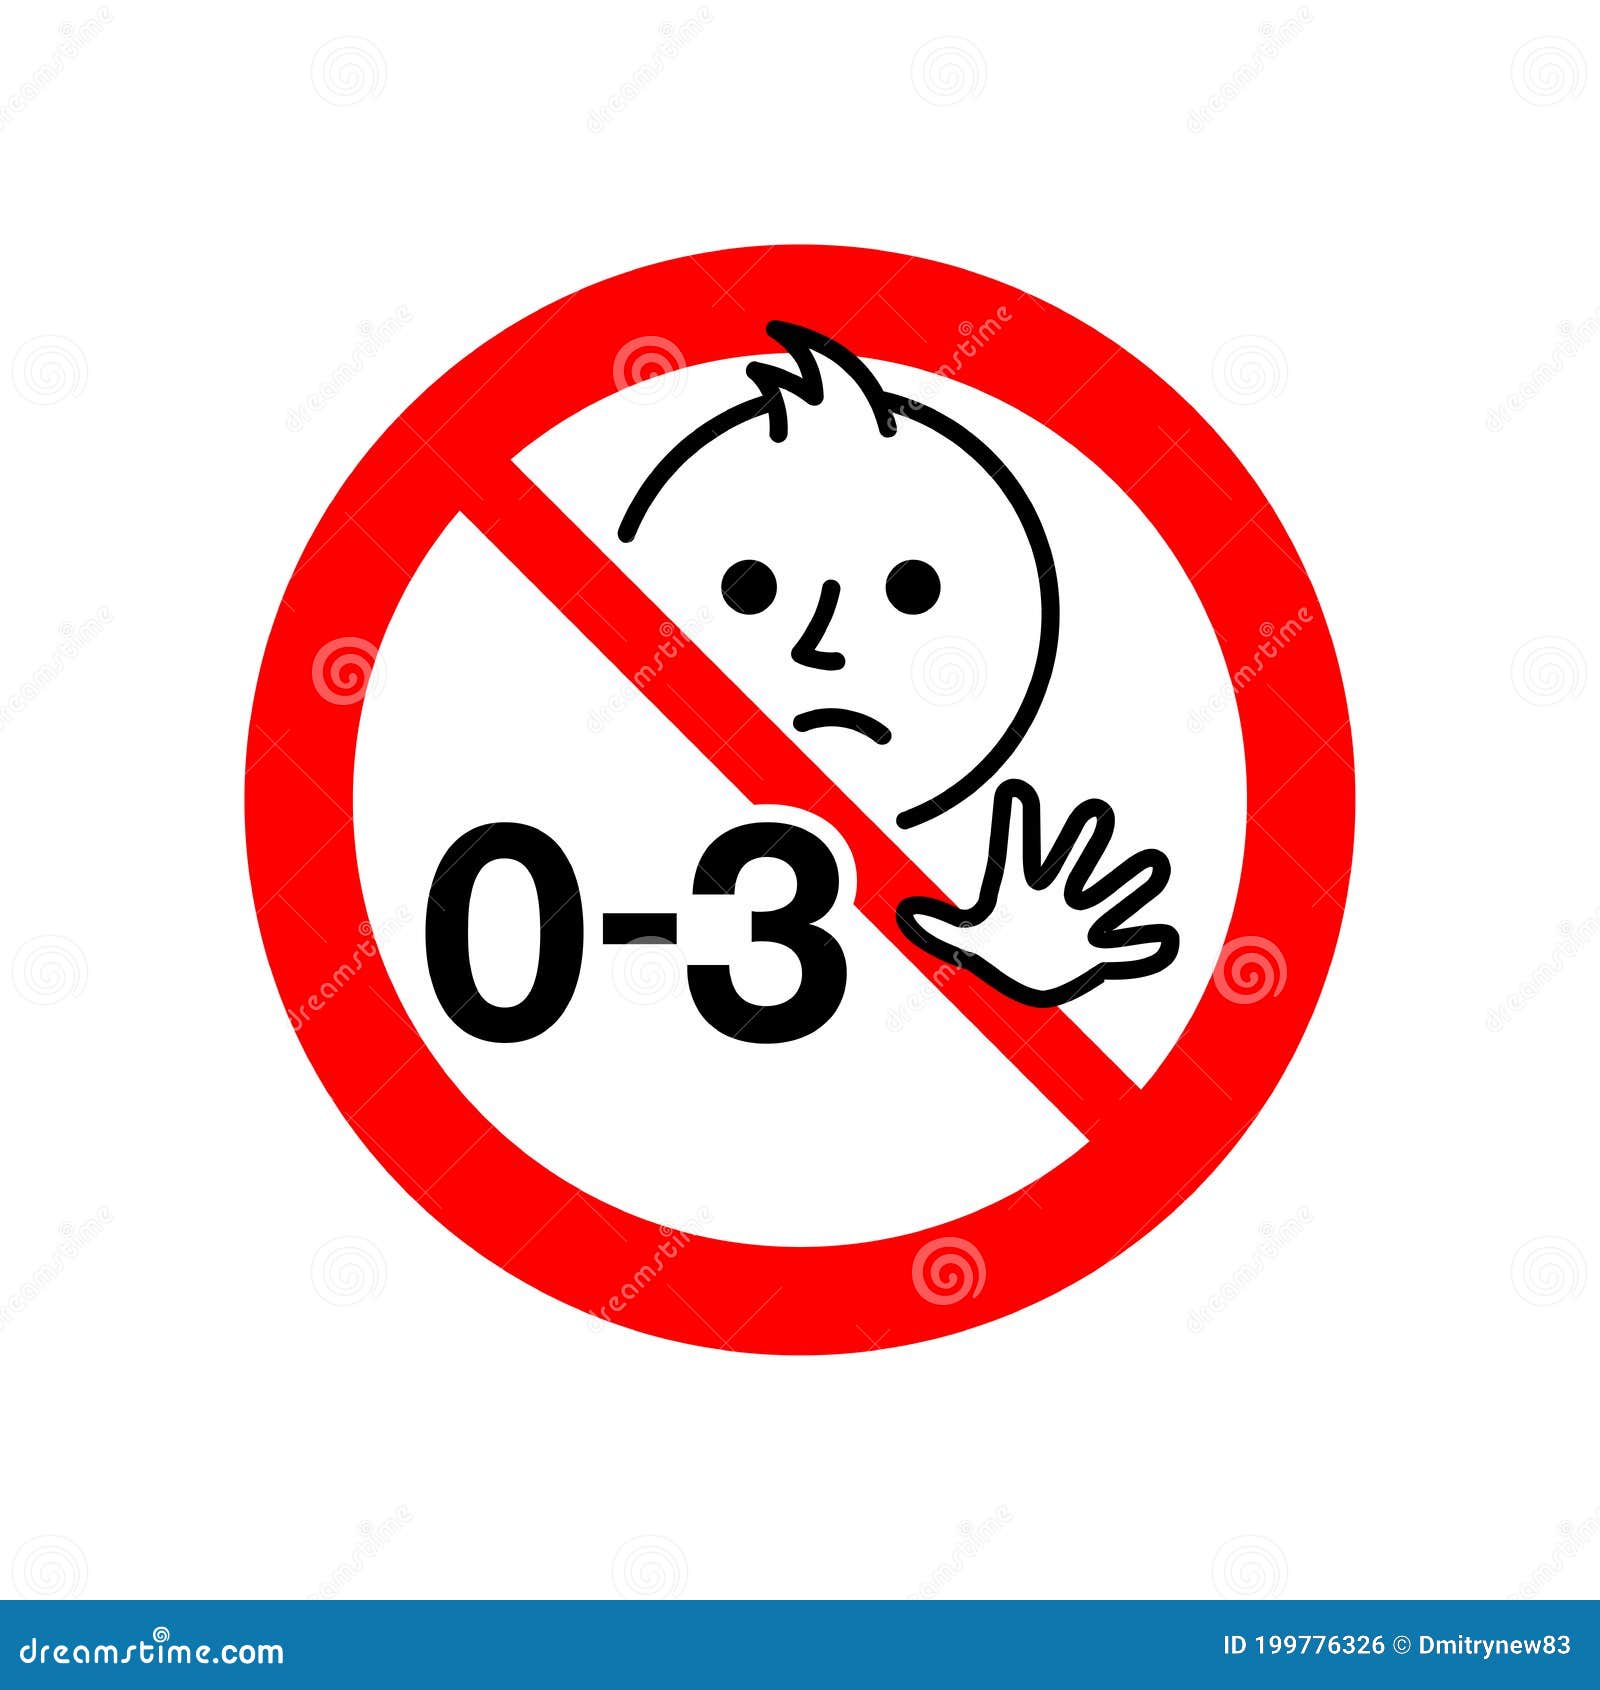 До какого возраста детям запрещено. Значок от 0 до 3 лет запрещено. Значок для детей старше 3 лет. Запрет детям для детей. Детям до 12 лет запрещено.